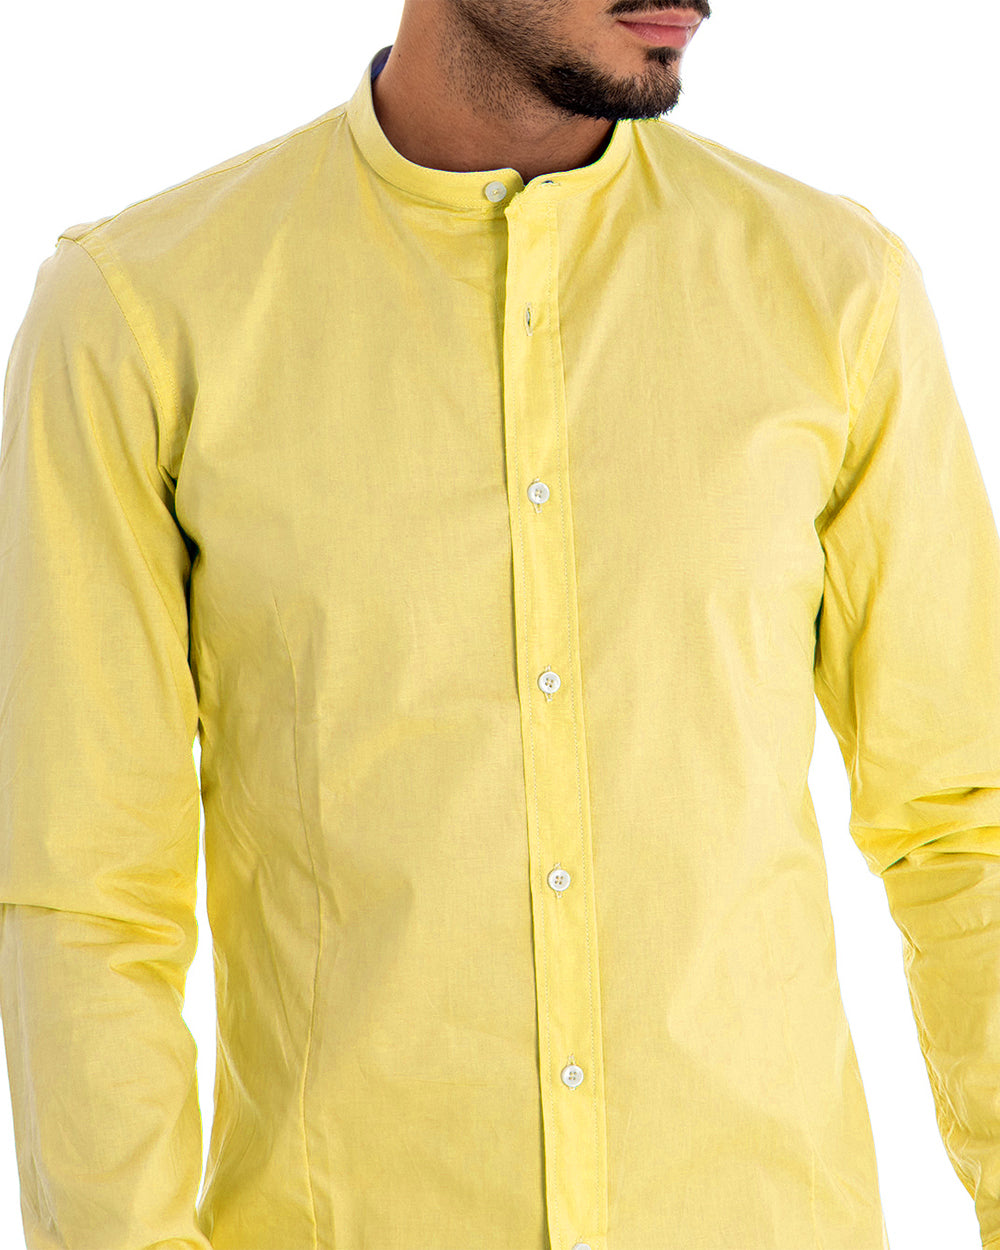 Camicia Uomo Collo Coreano Manica Lunga Tinta Unita Slim Fit Basic Giallo GIOSAL-C2101A